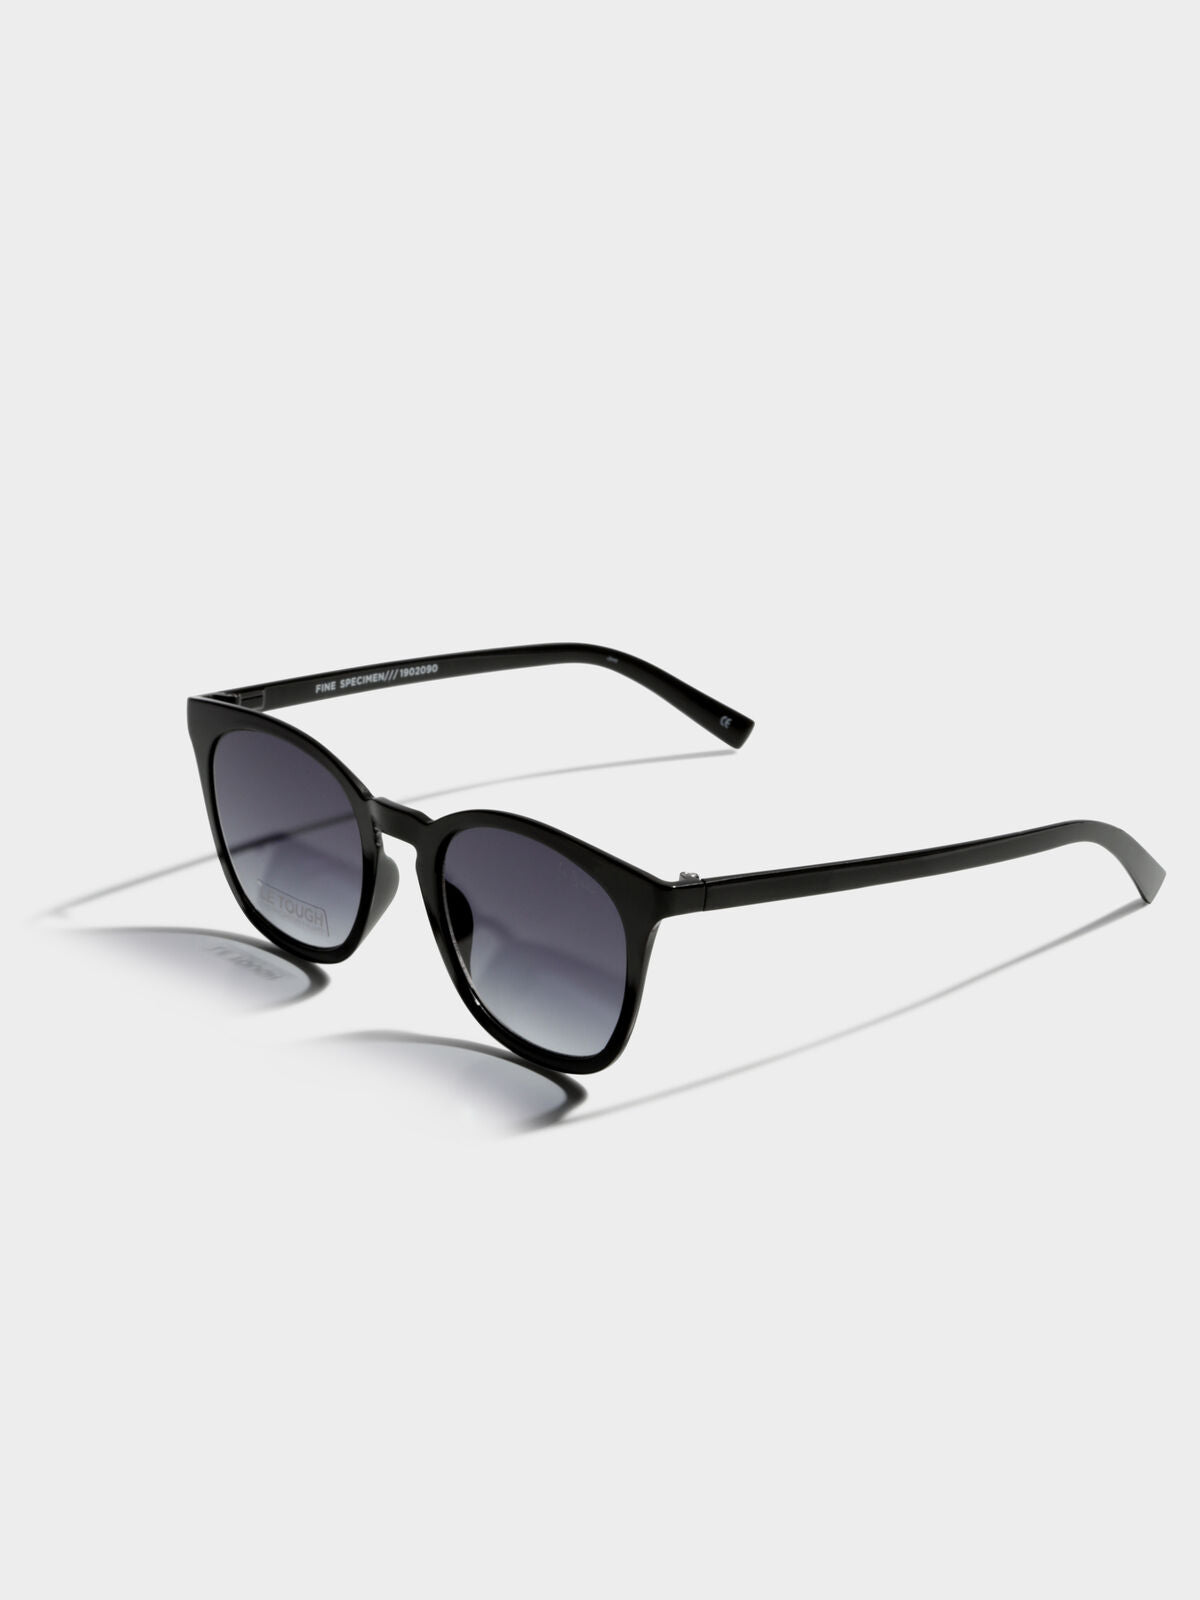 Fine Specimen Sunglasses in Black Mono